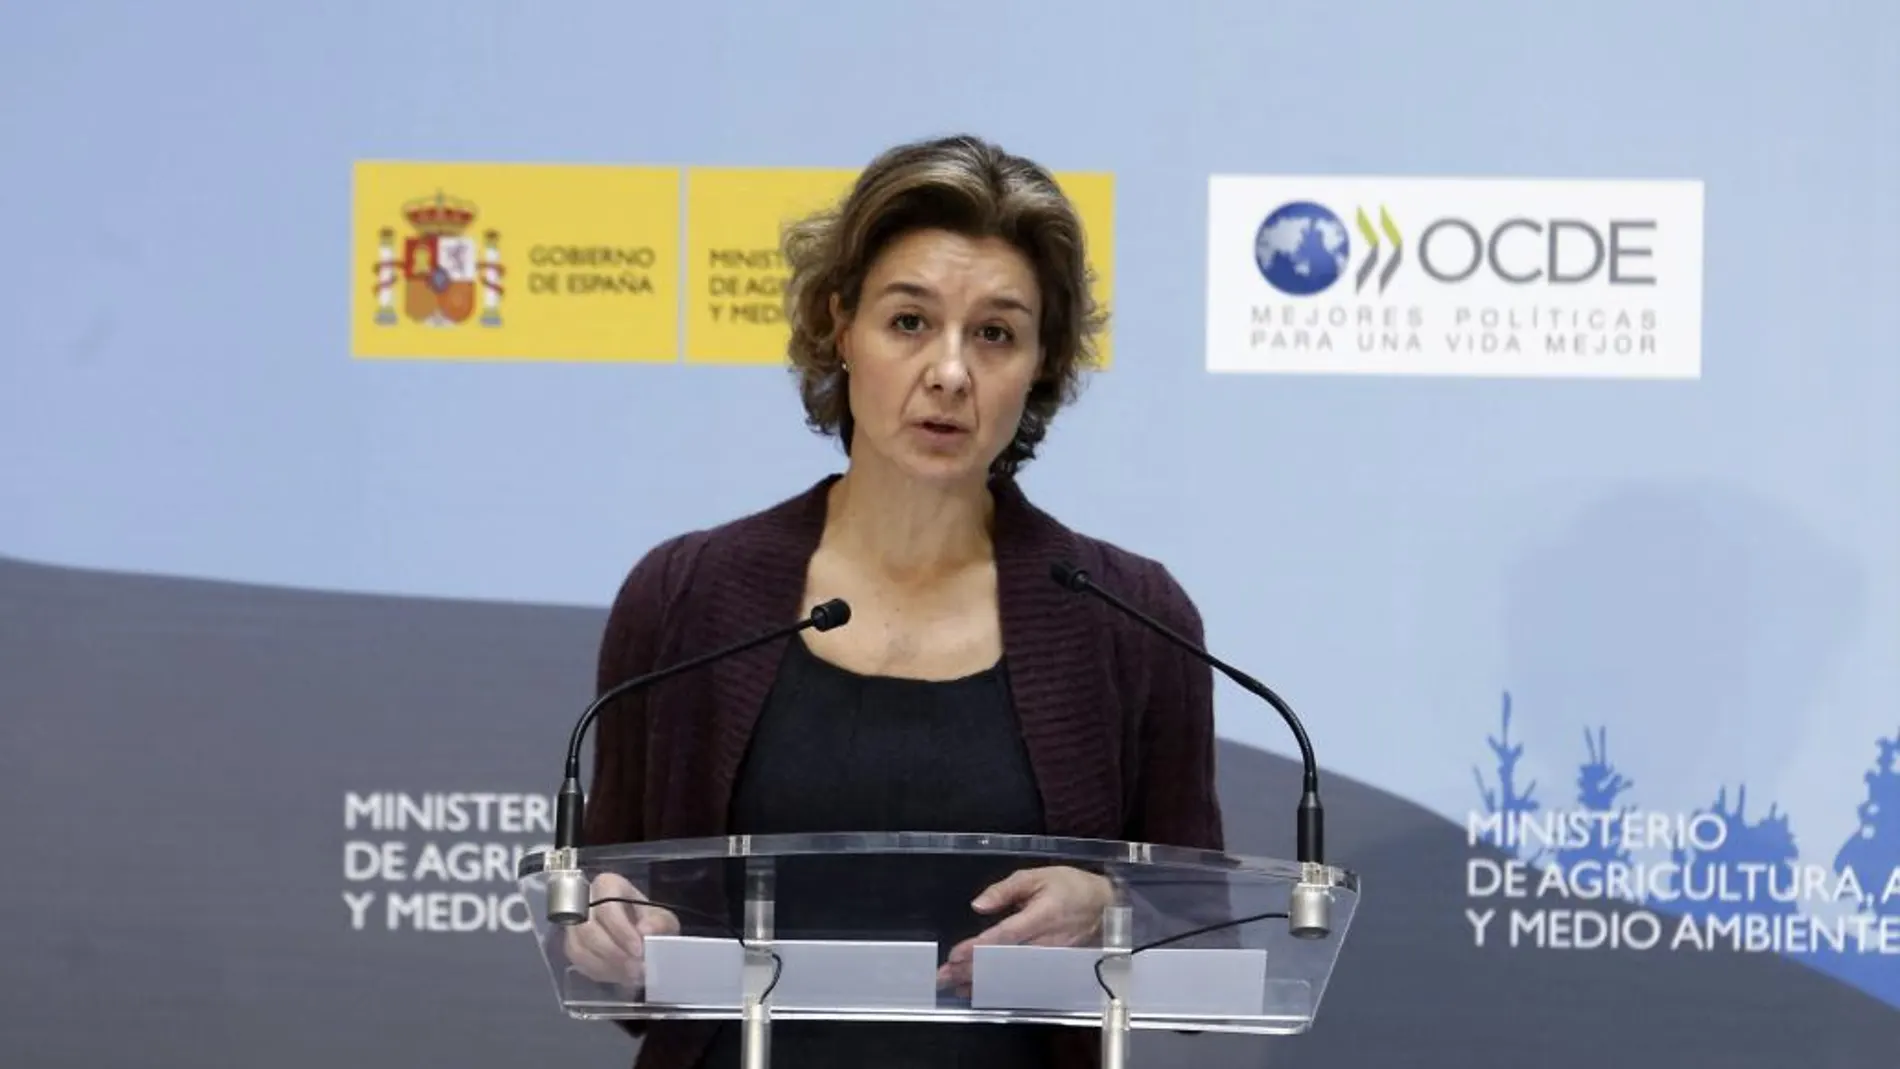 La ministra Agricultura, Isabel García Tejerina, durante la presentación del informe "Análisis de los resultados medioambientales de la OCDE. España 2015"